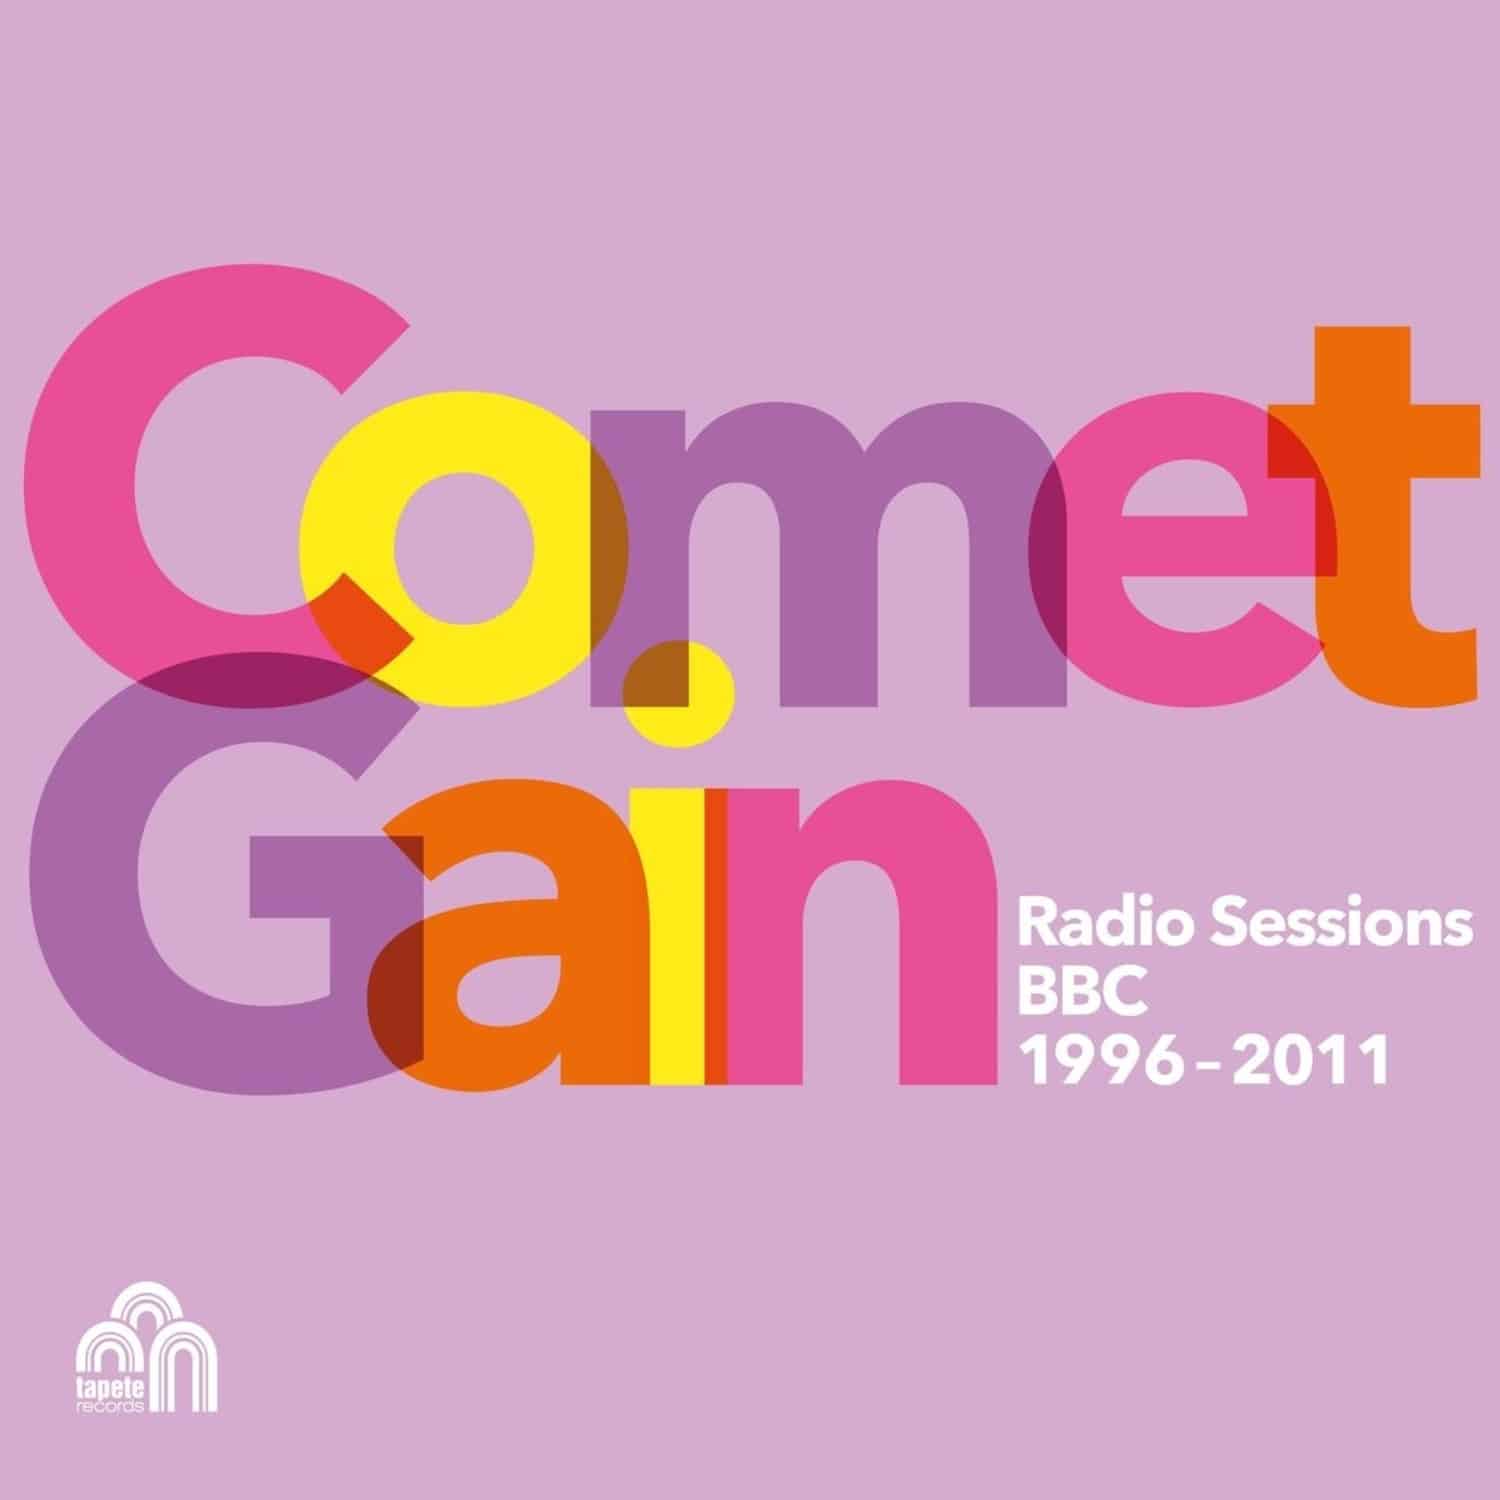 Comet Gain - RADIO SESSIONS 